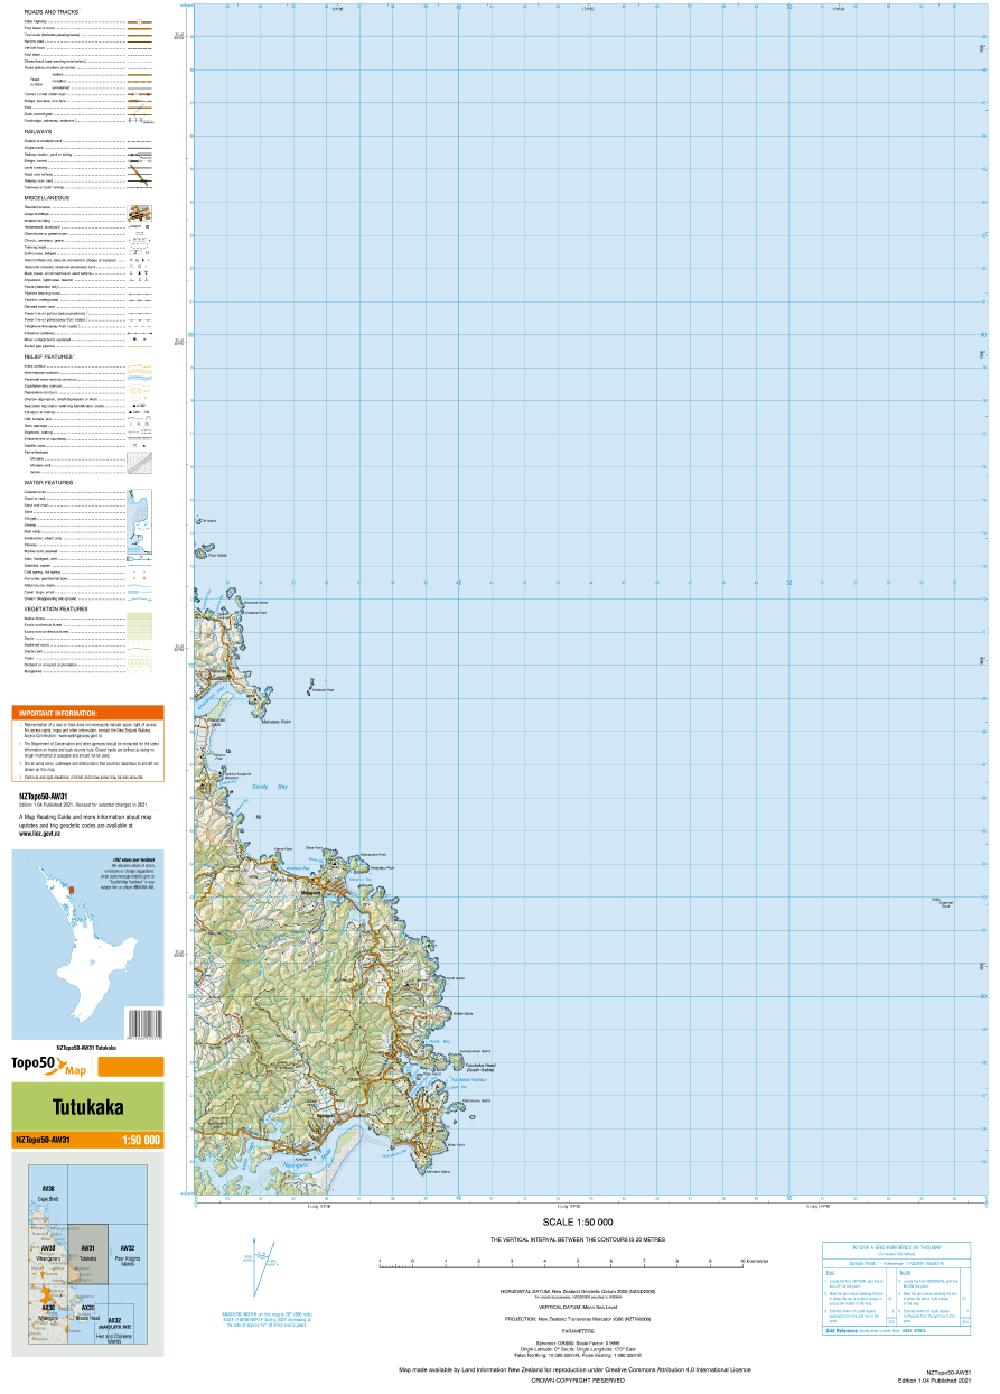 Topo map of Tutukaka